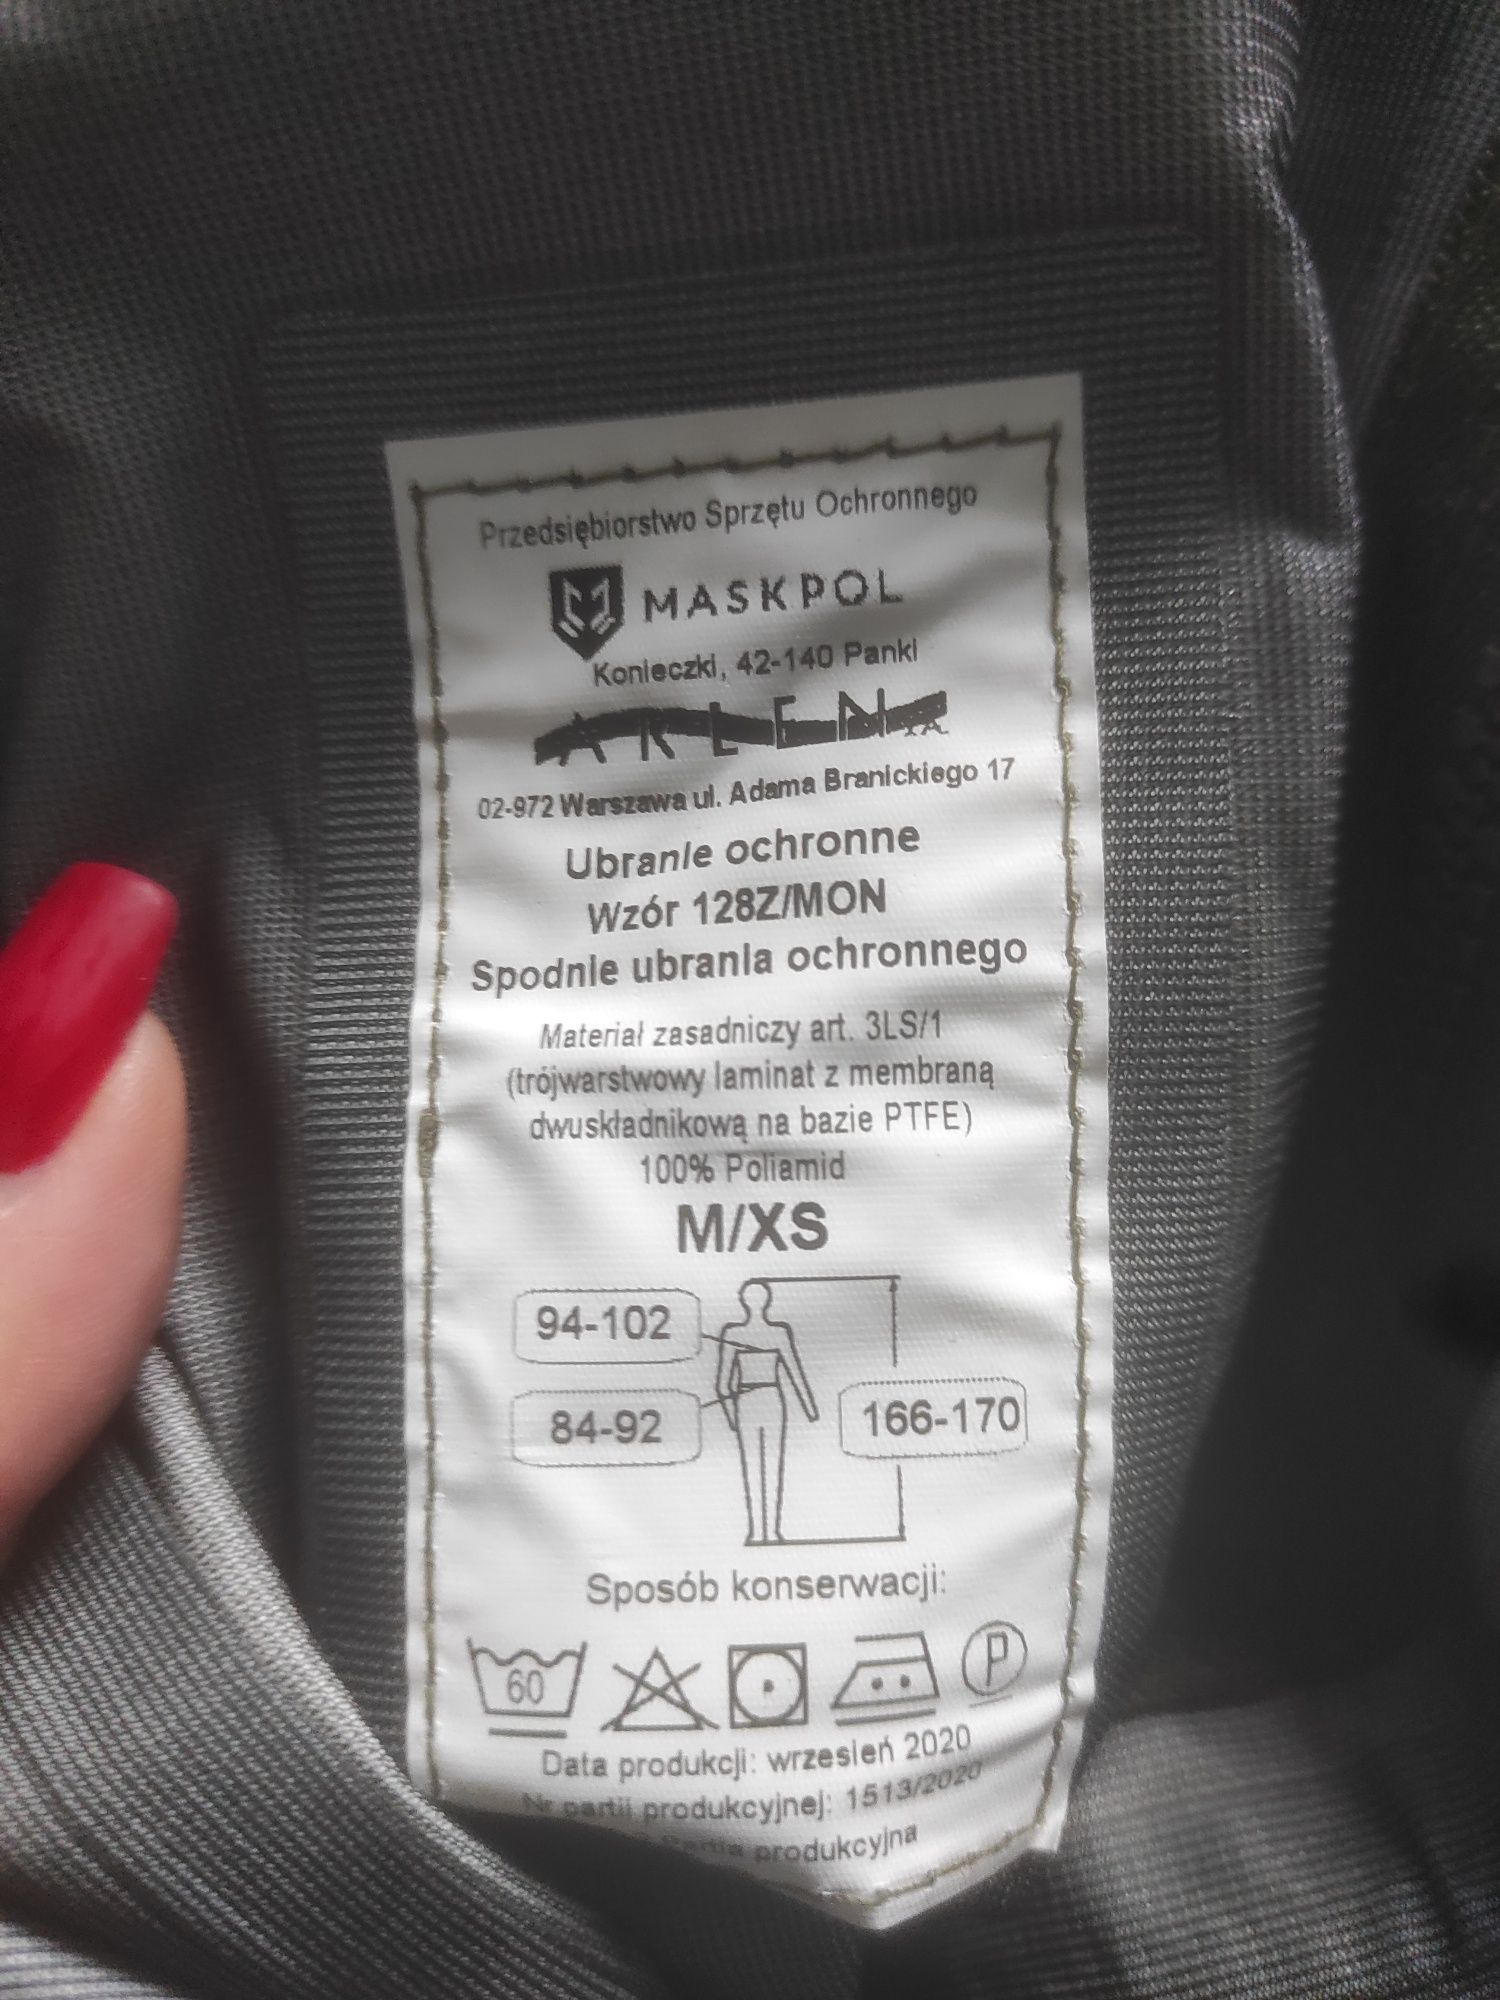 Spodnie ubrania ochronnego m/xs